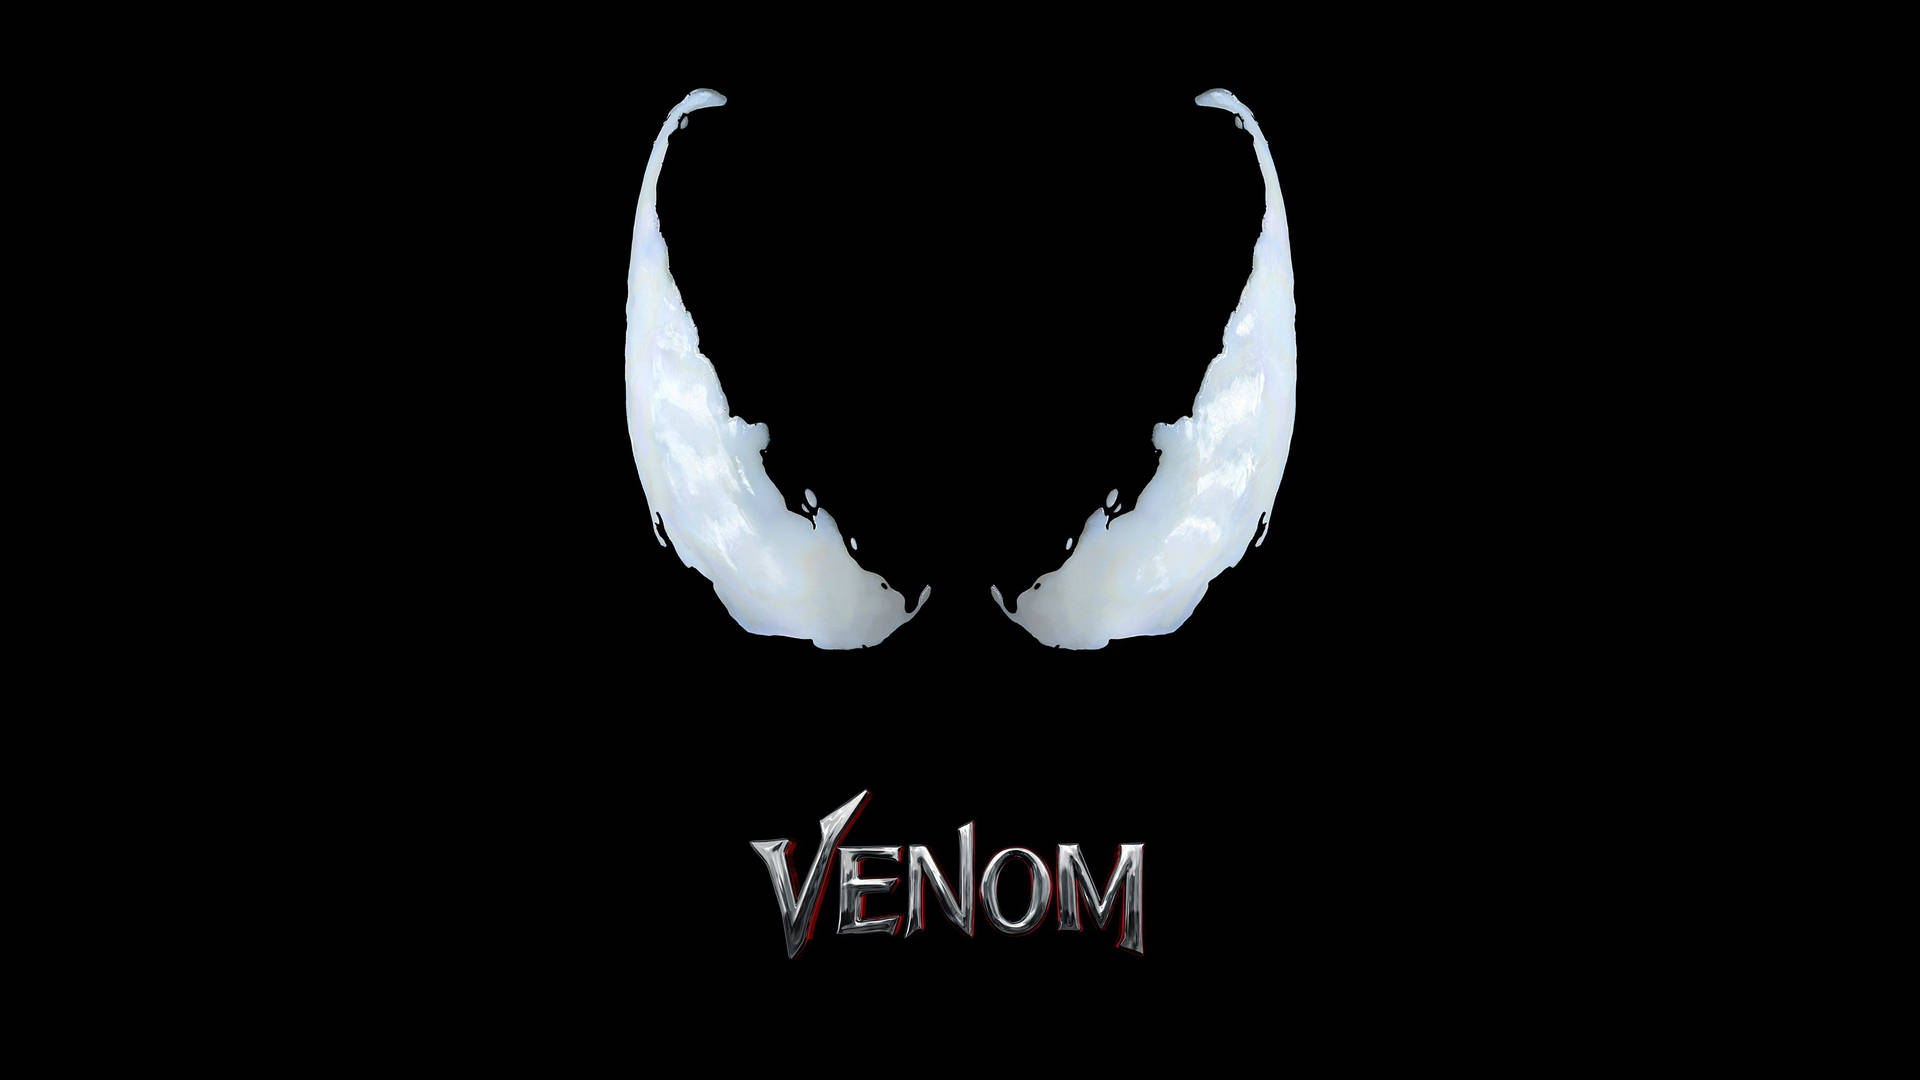 Letraestilizada Del Título De La Película Venom. Fondo de pantalla